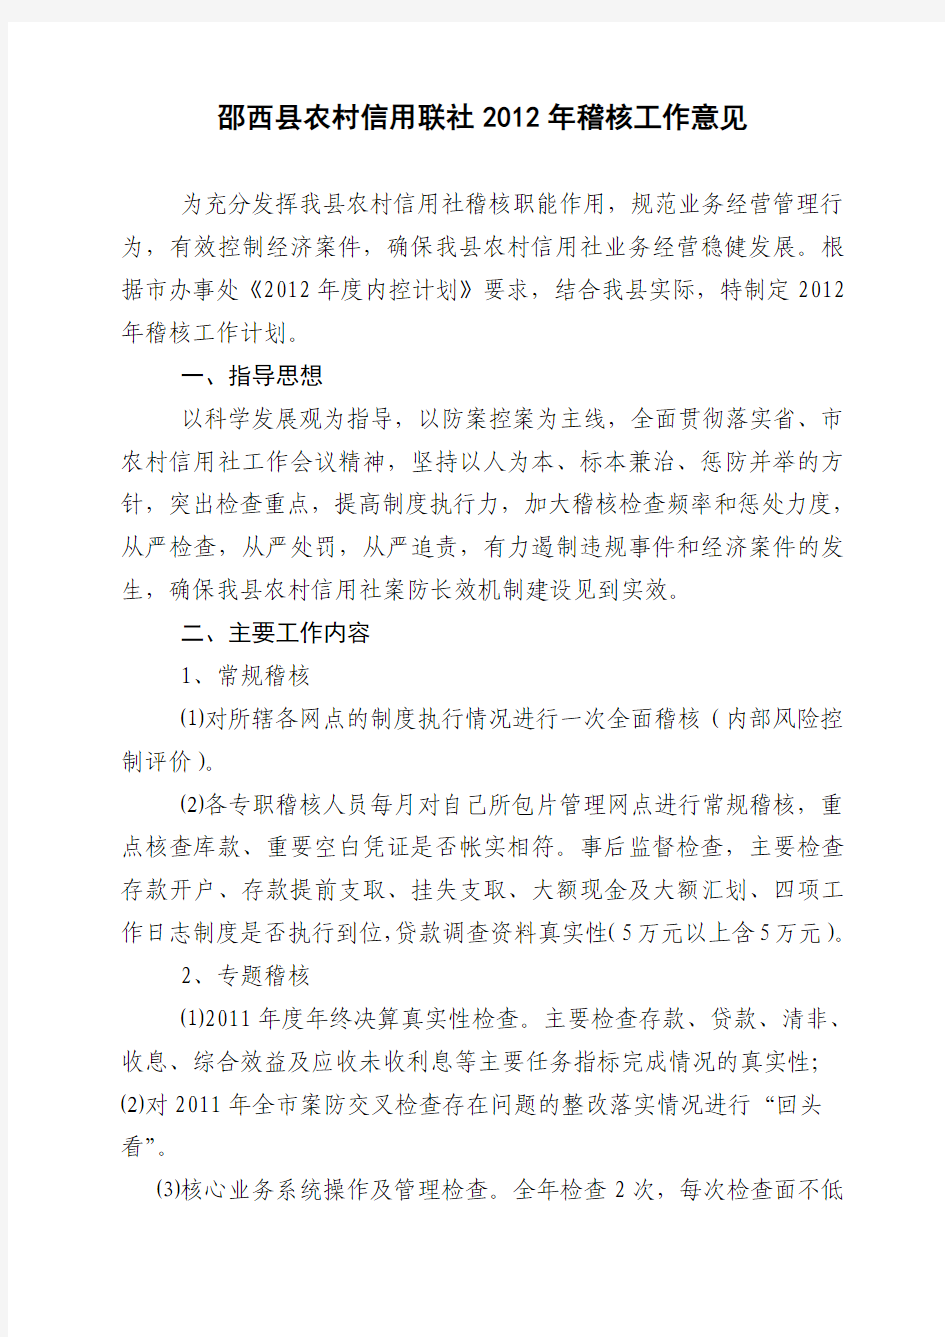 邵西县农村信用联社2012年稽核工作意见  26